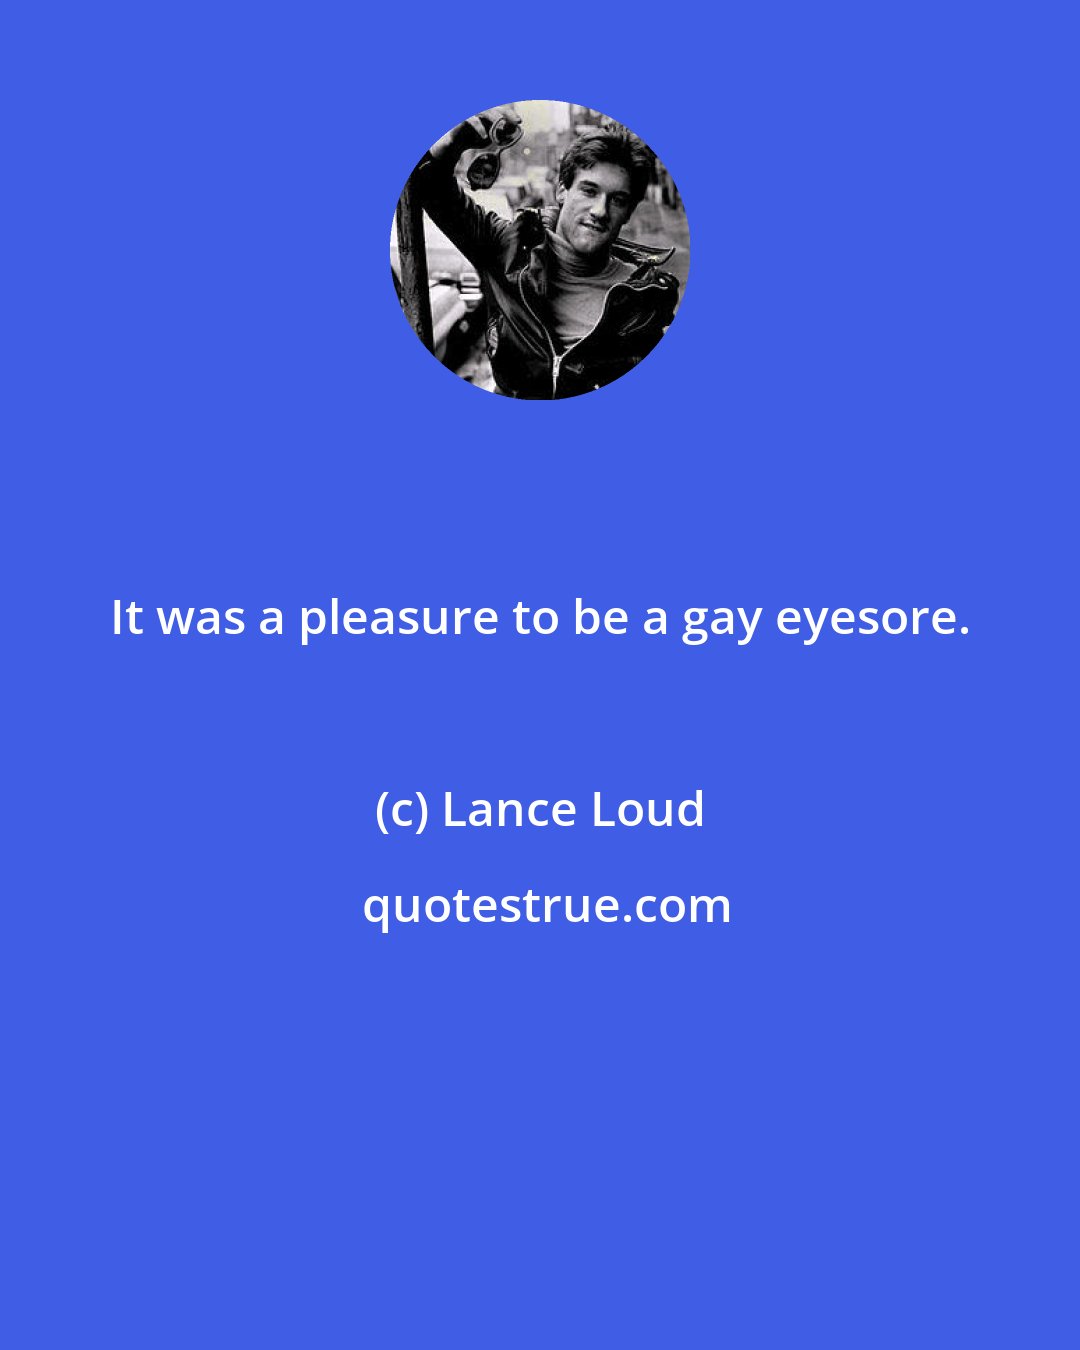 Lance Loud: It was a pleasure to be a gay eyesore.